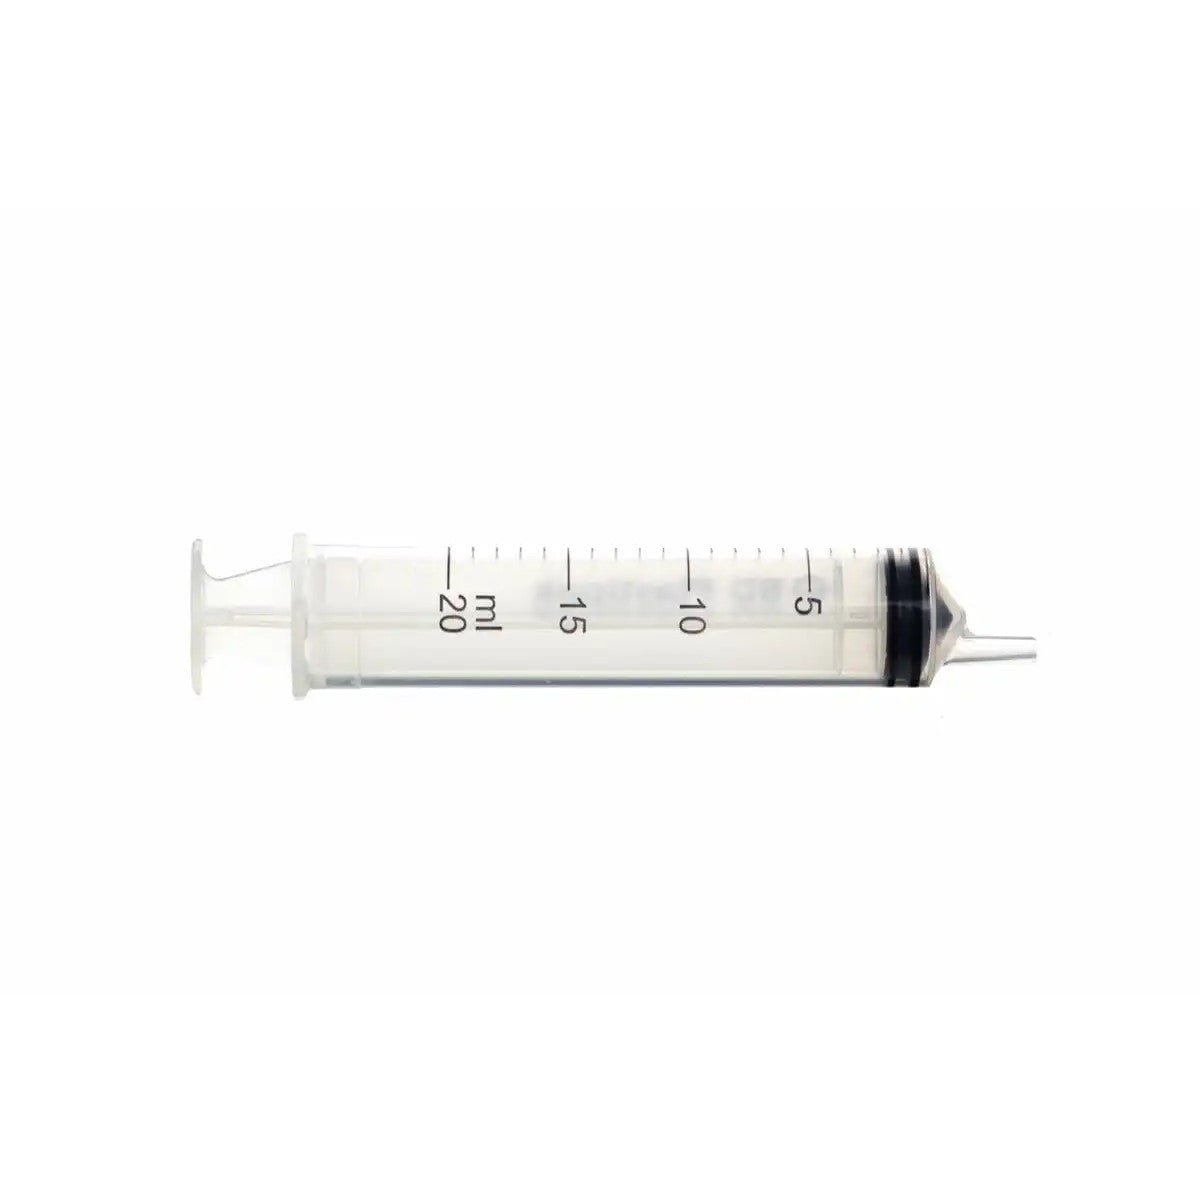 A 20ml syringe